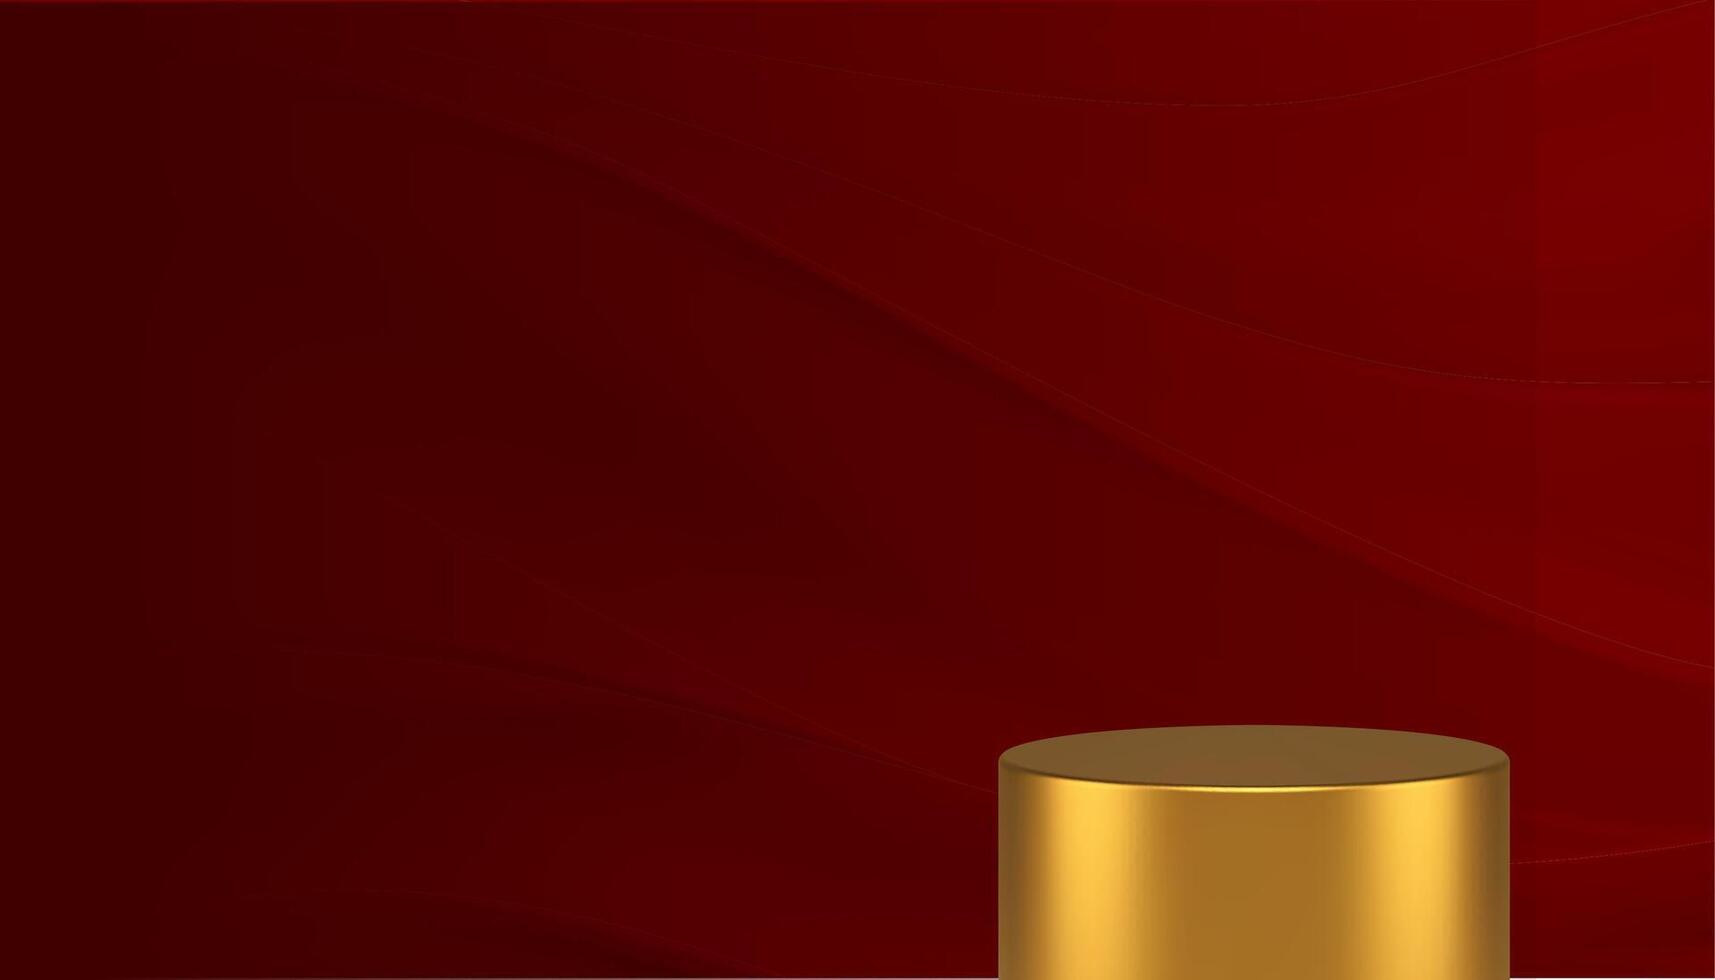 cilindro dourado 3d pódio pedestal elegante curvado onda vermelho parede fundo realista vetor